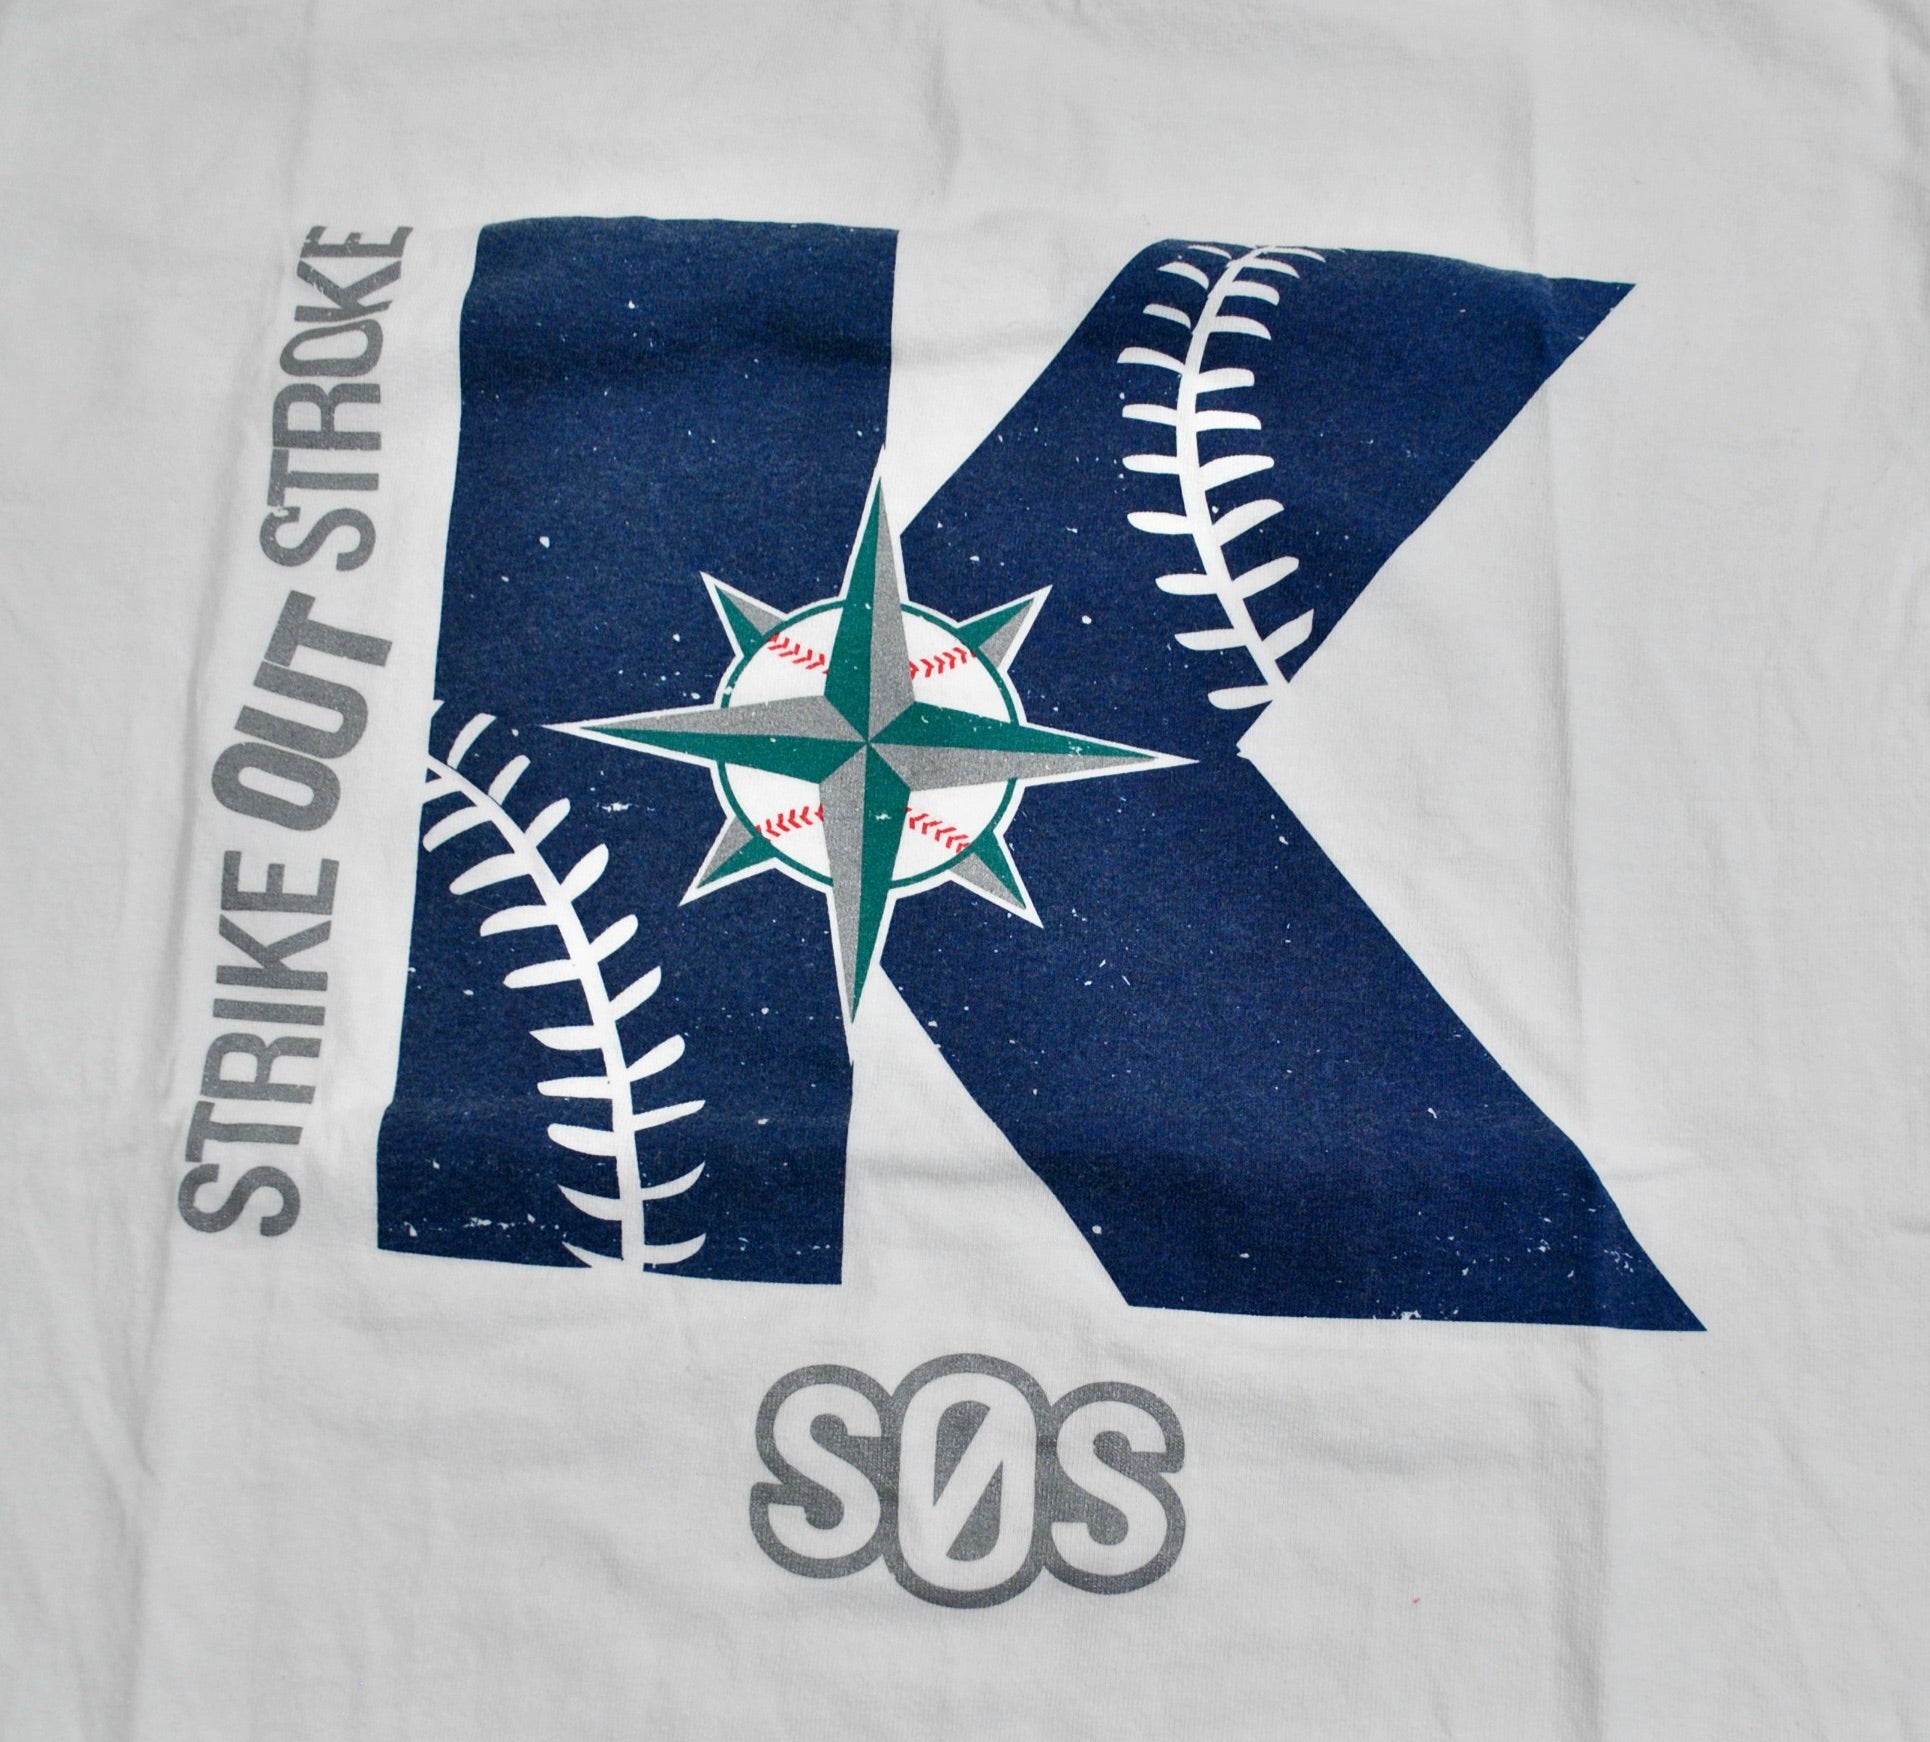 Seattle Mariners Shirt - 9Teeshirt